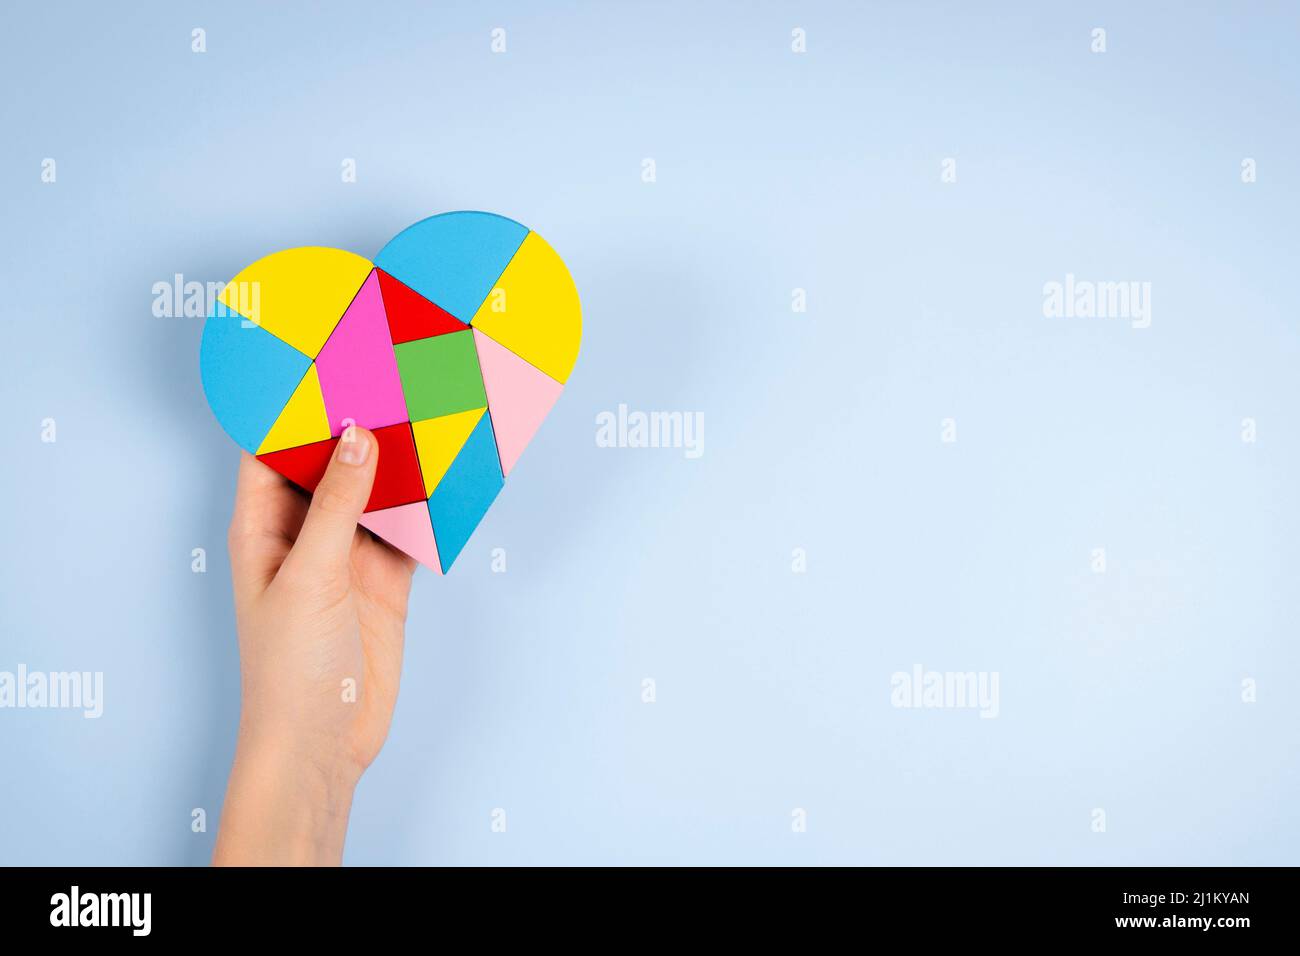 Main d'enfant tenant un coeur de puzzle coloré sur fond bleu clair. Concept de journée mondiale de sensibilisation à l'autisme Banque D'Images